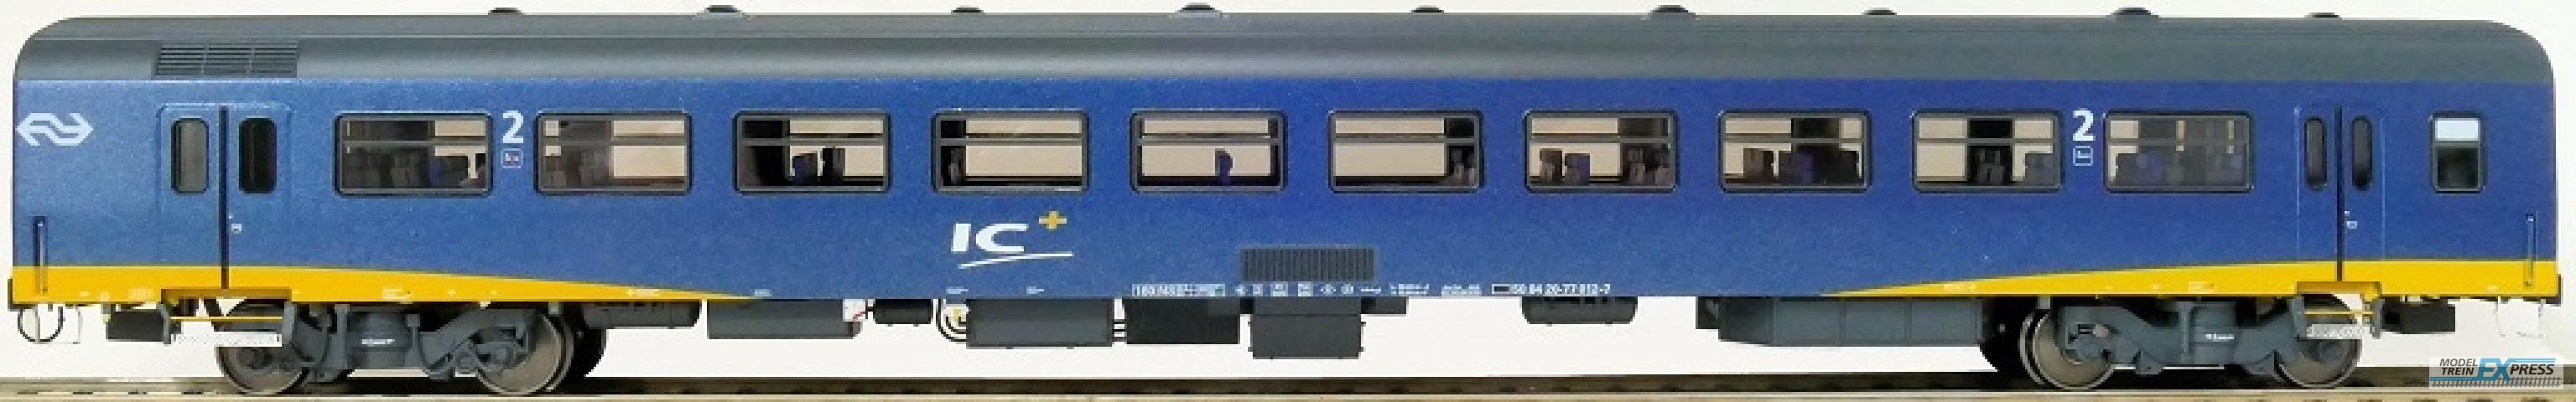 Exact-train 11183 NS ICR Plus Reisezugwagen B ( Farbe Blau) mit Beleuchtung und Figuren, Ep. IV